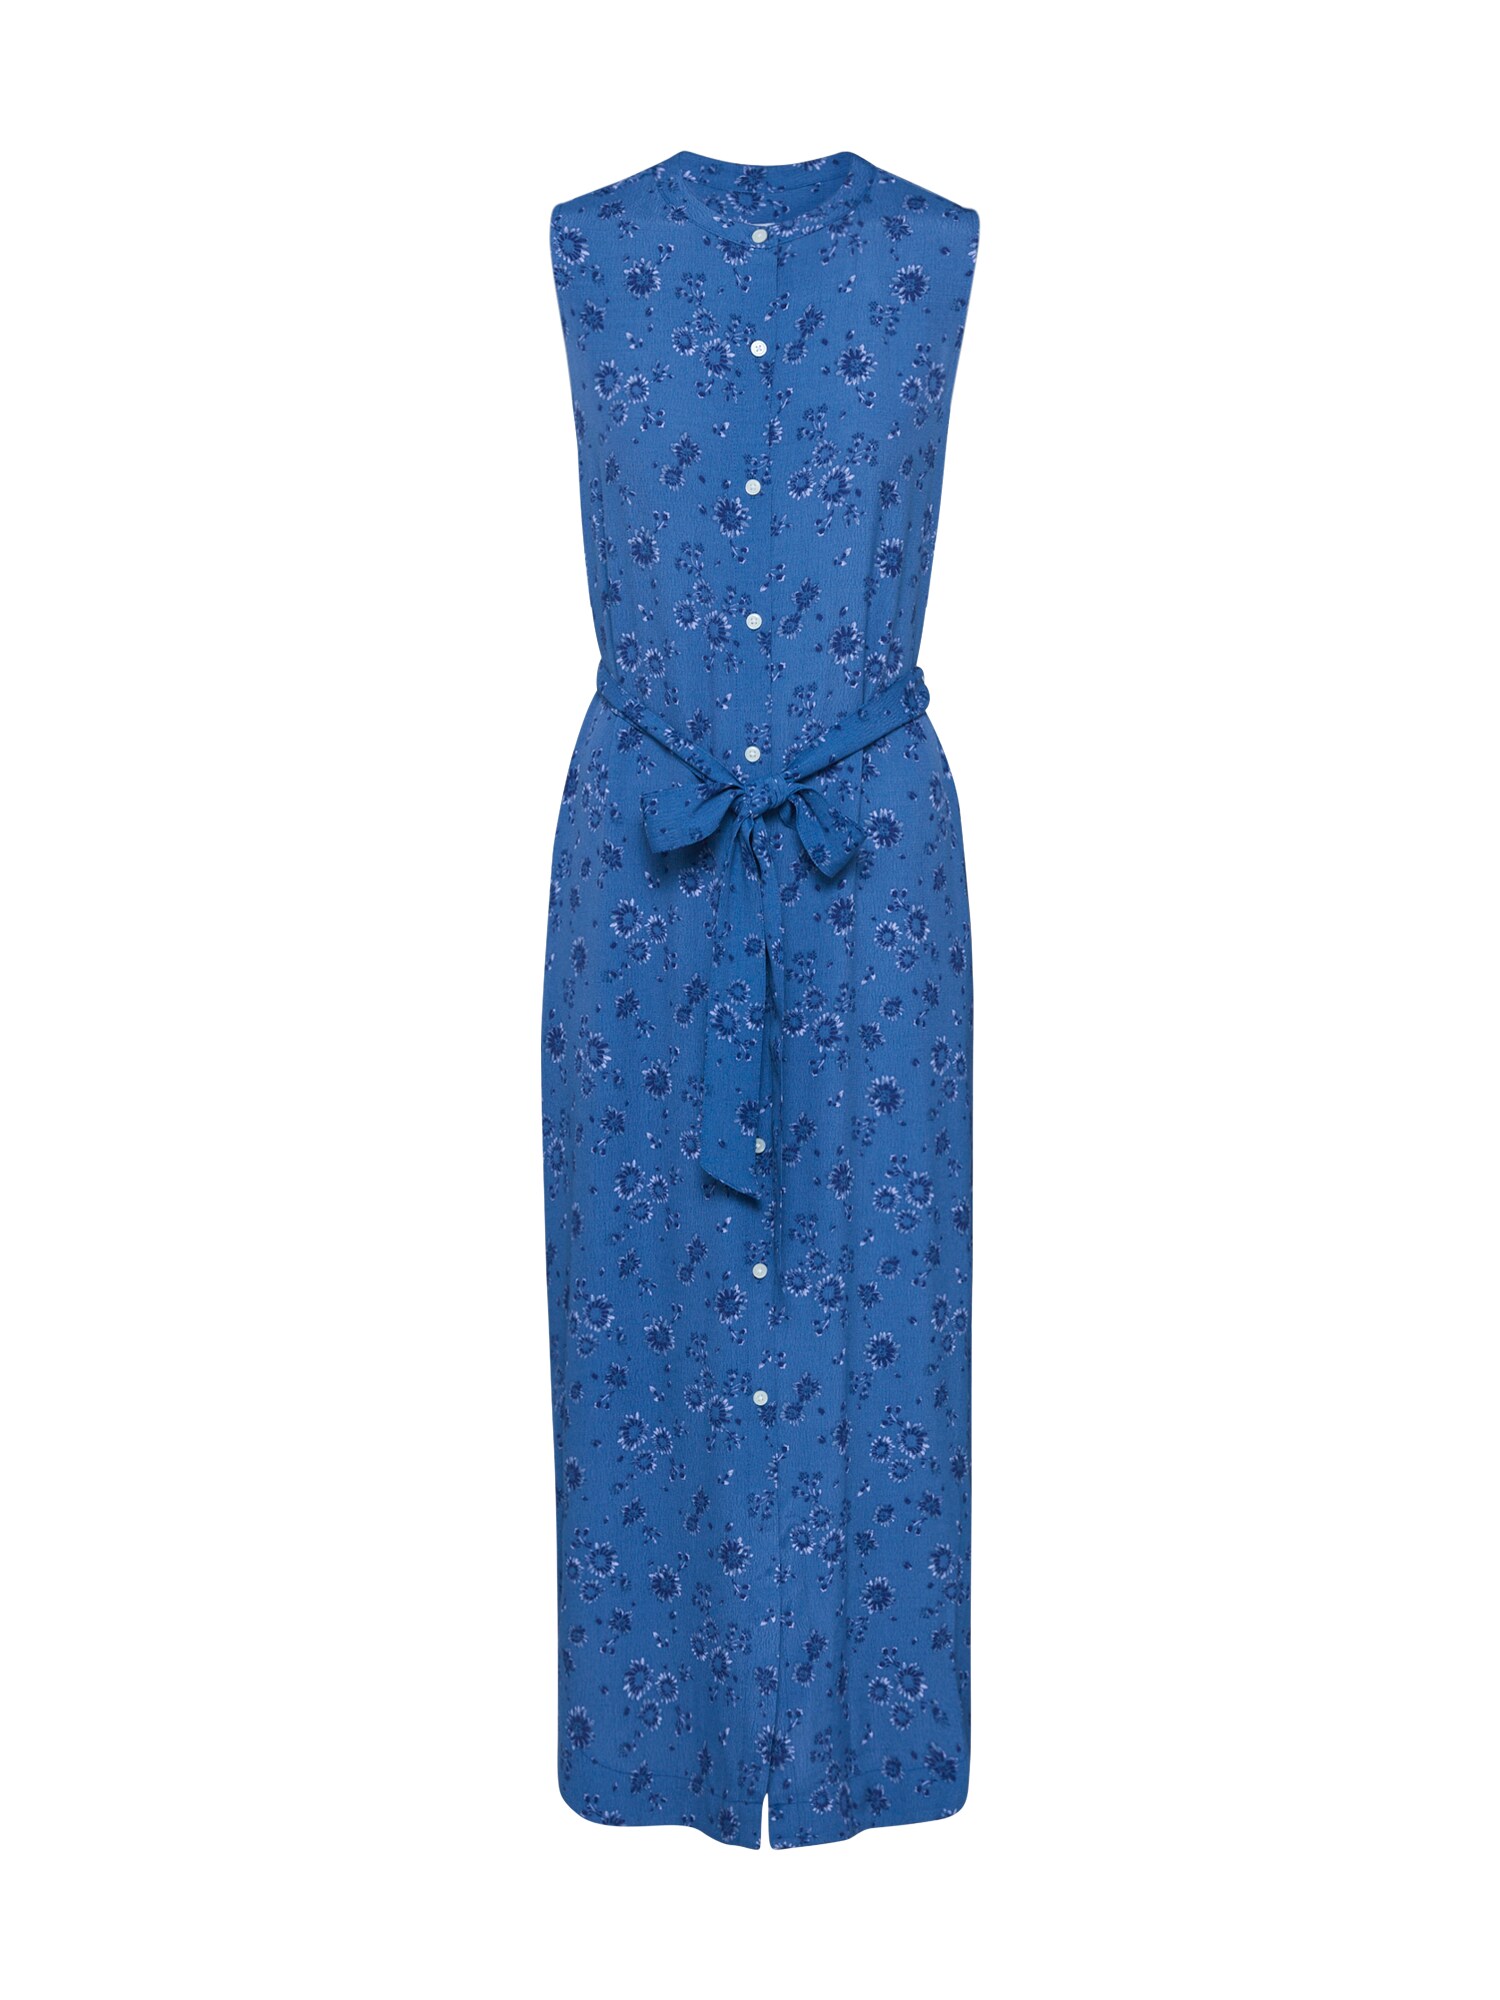 GAP Palaidinės tipo suknelė  mėlyna / mišrios spalvos